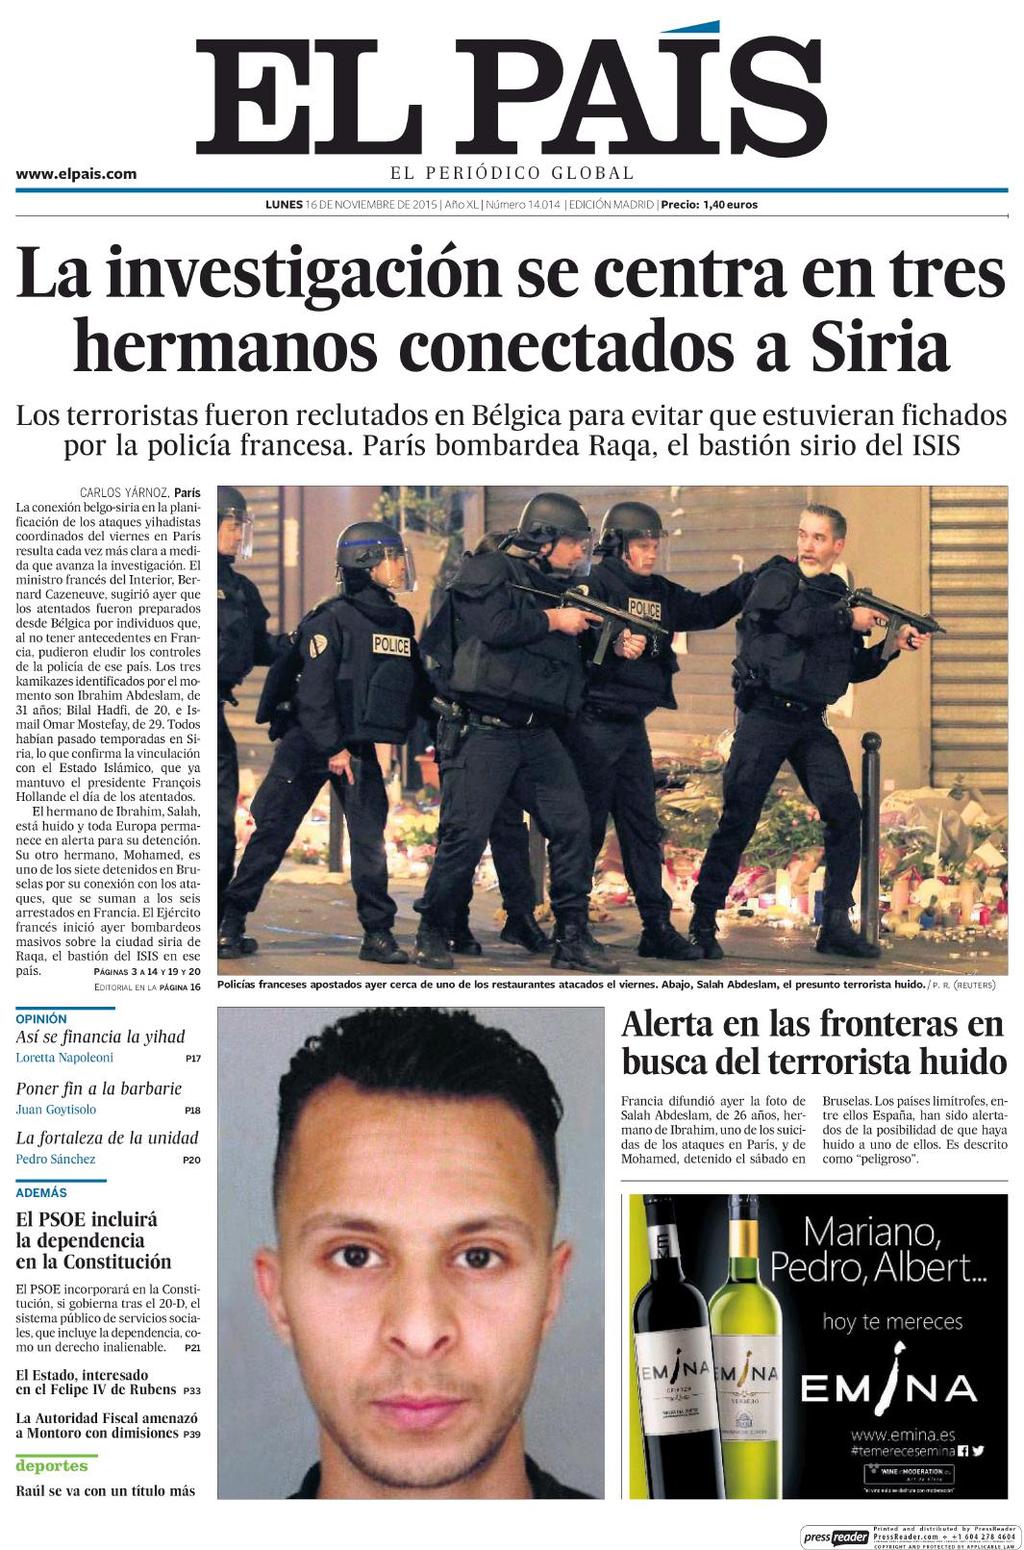 16/11/2015 Kiosko y Más El País 16 nov. 2015 Page #1 http://lector.kioskoymas.